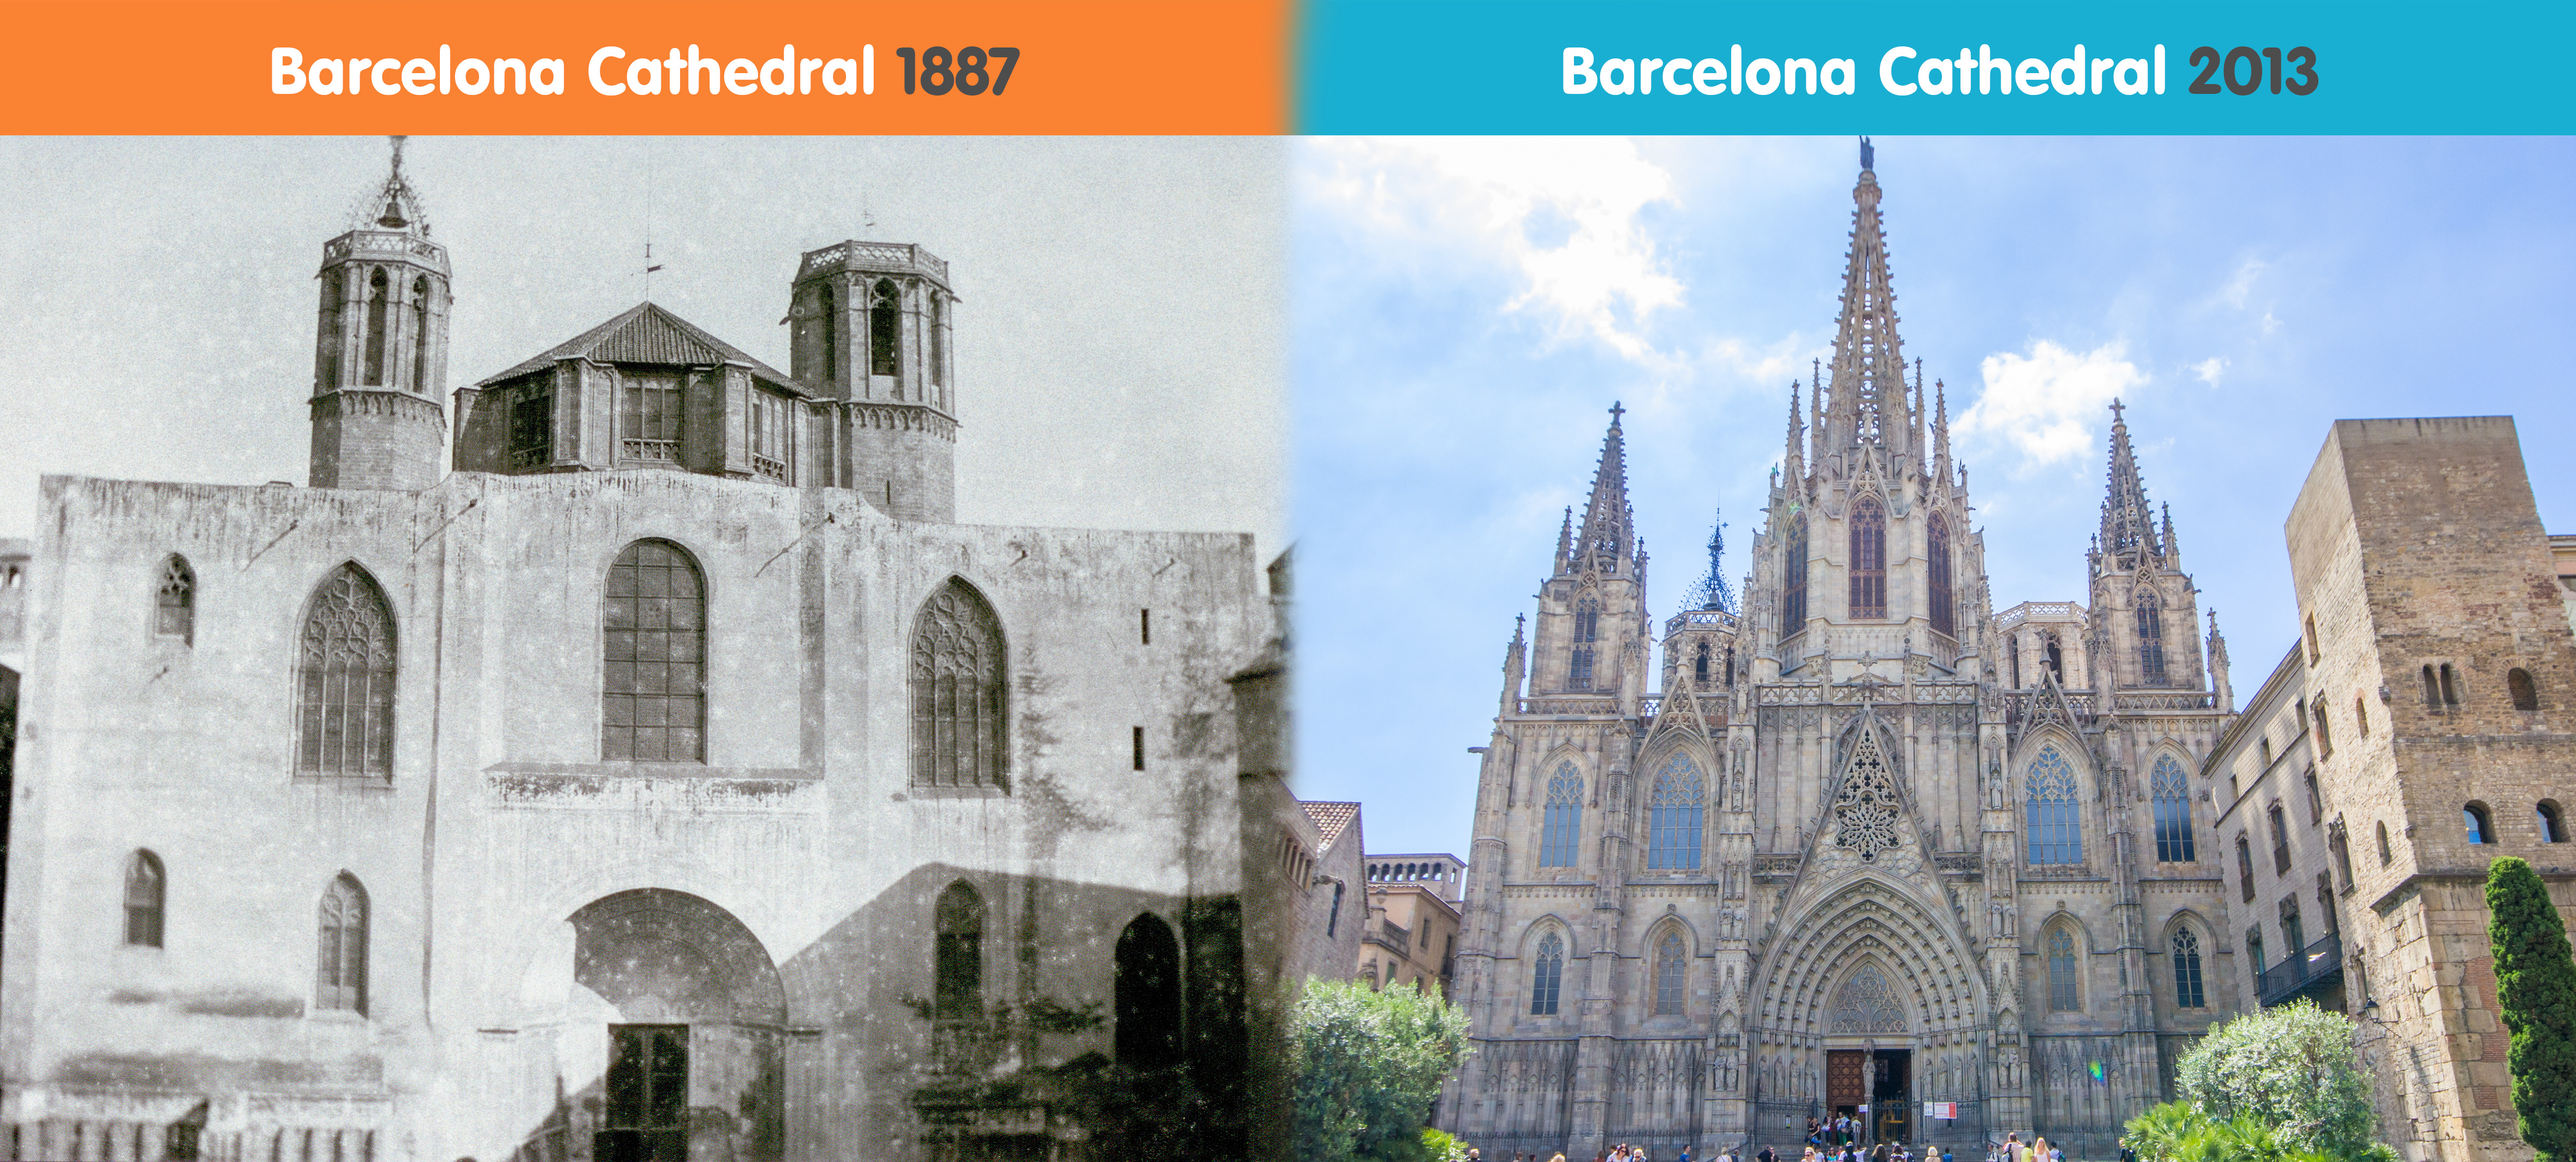 La Legendaria Historia de la Catedral de Barcelona